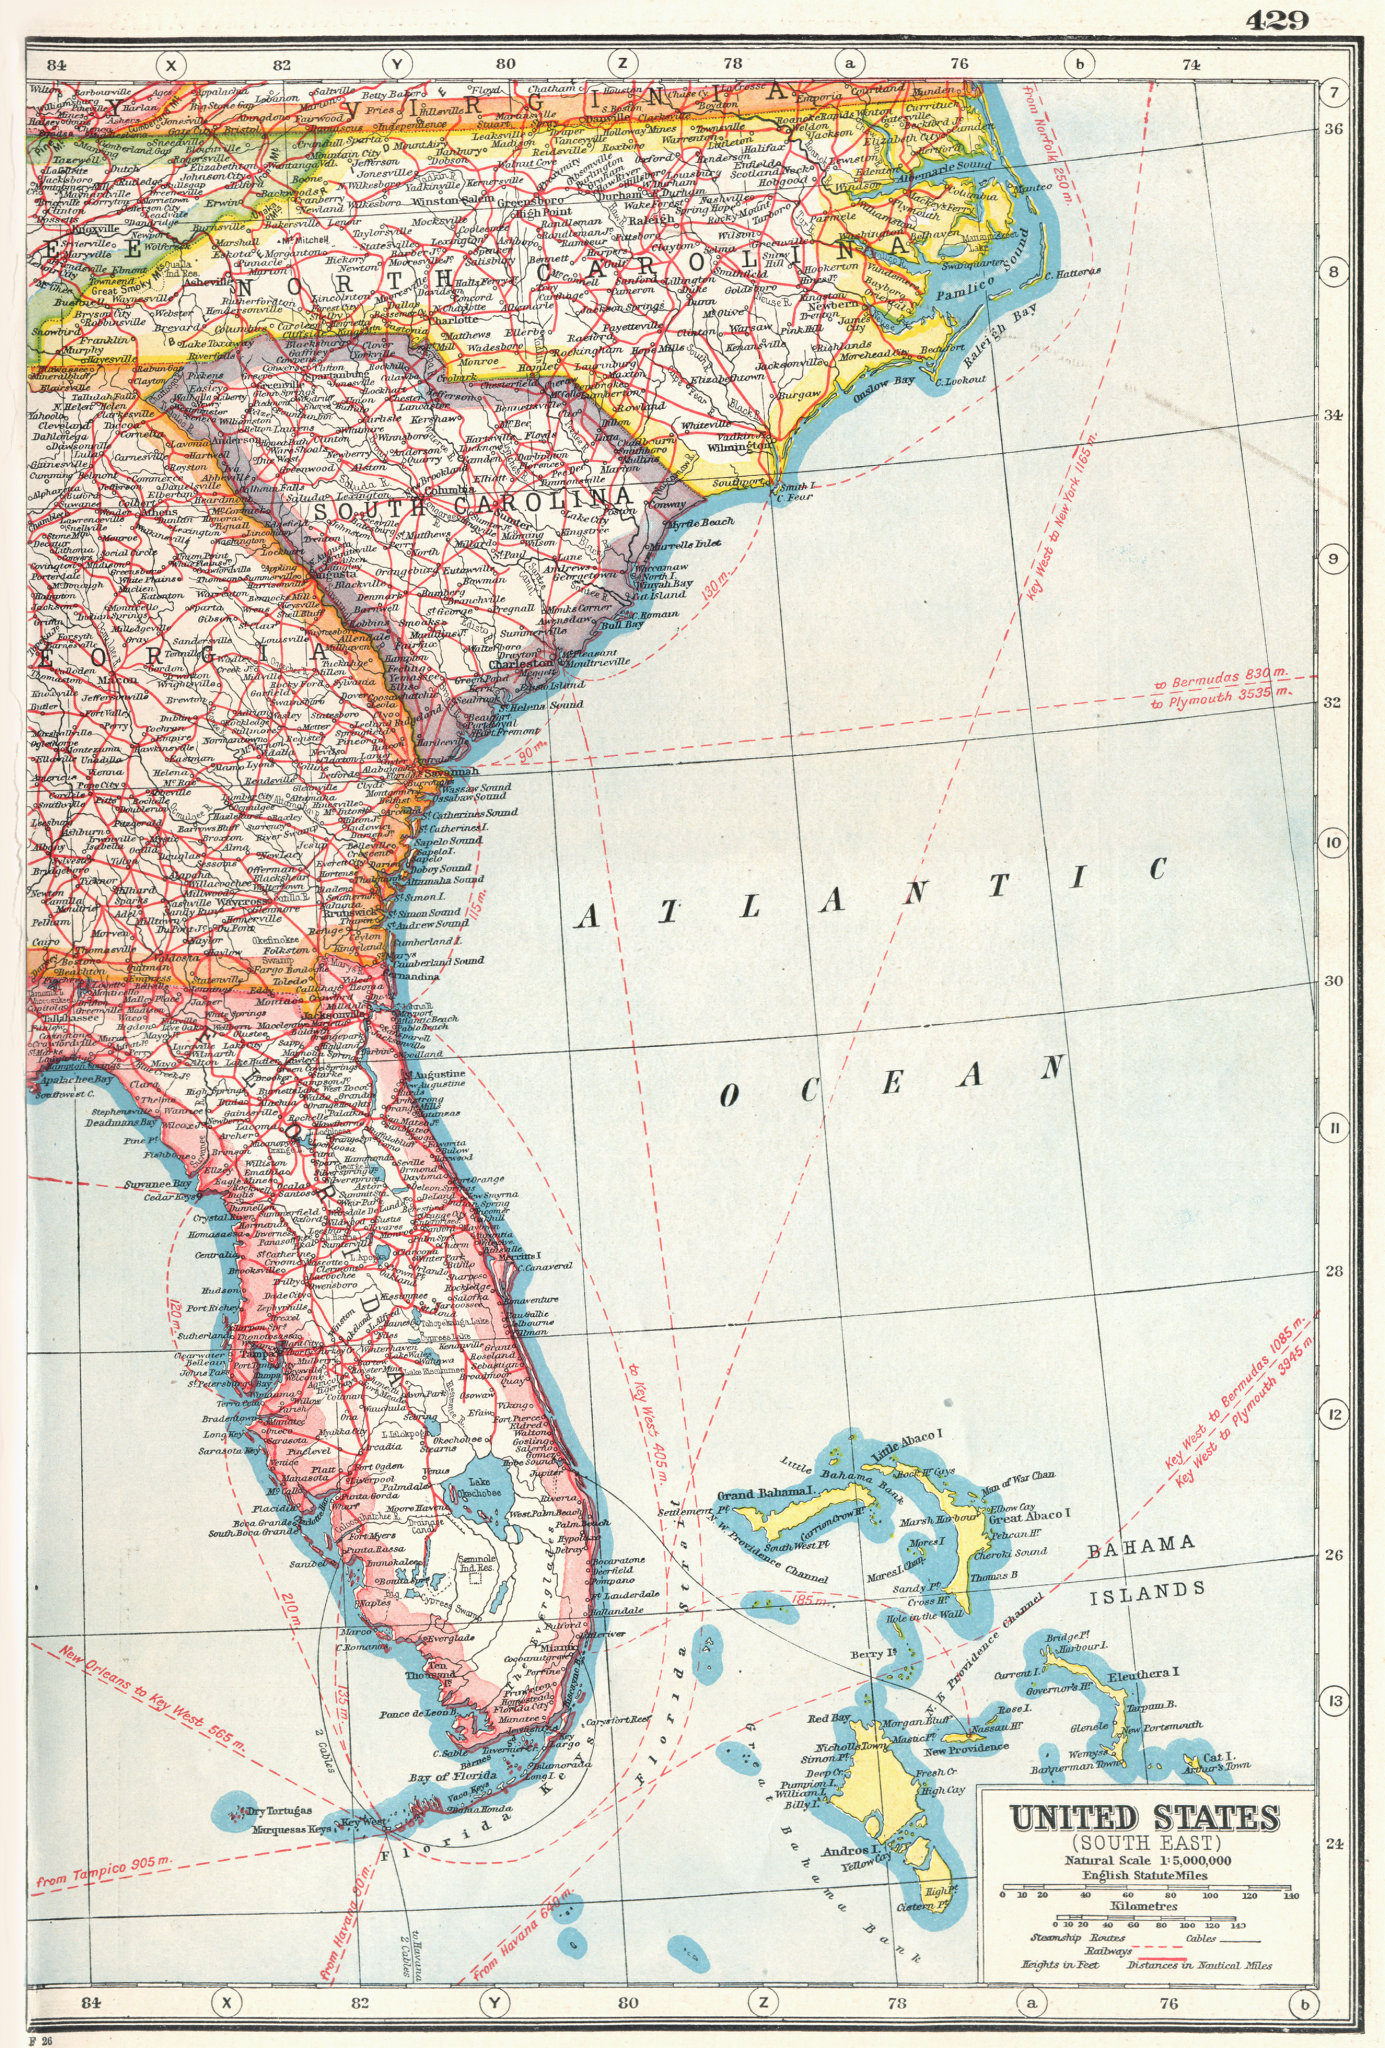 Associate Product USA. South East. Florida North Carolina South Carolina Georgia 1920 old map